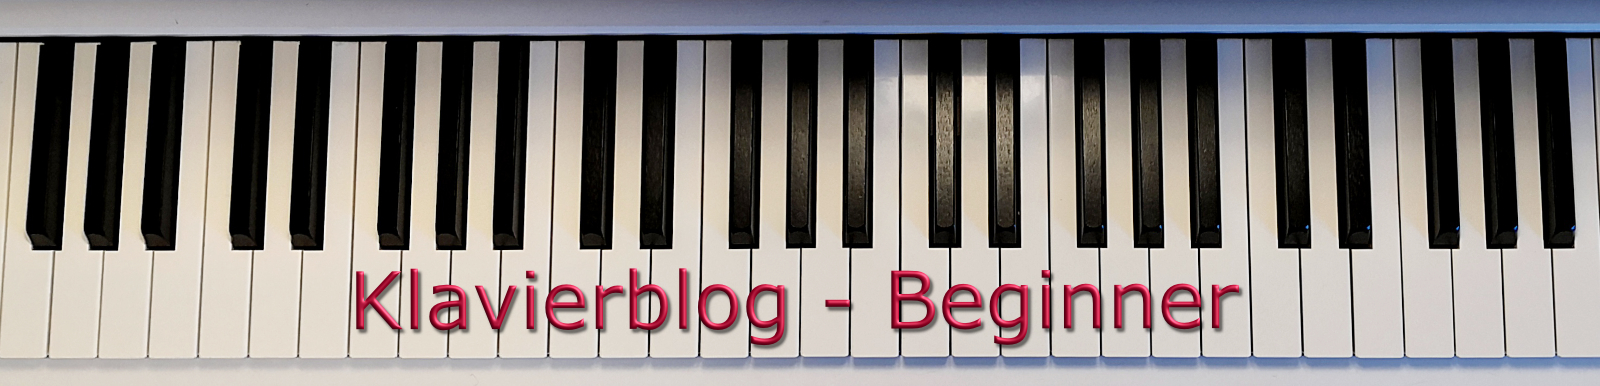 Klavierblog Beginner